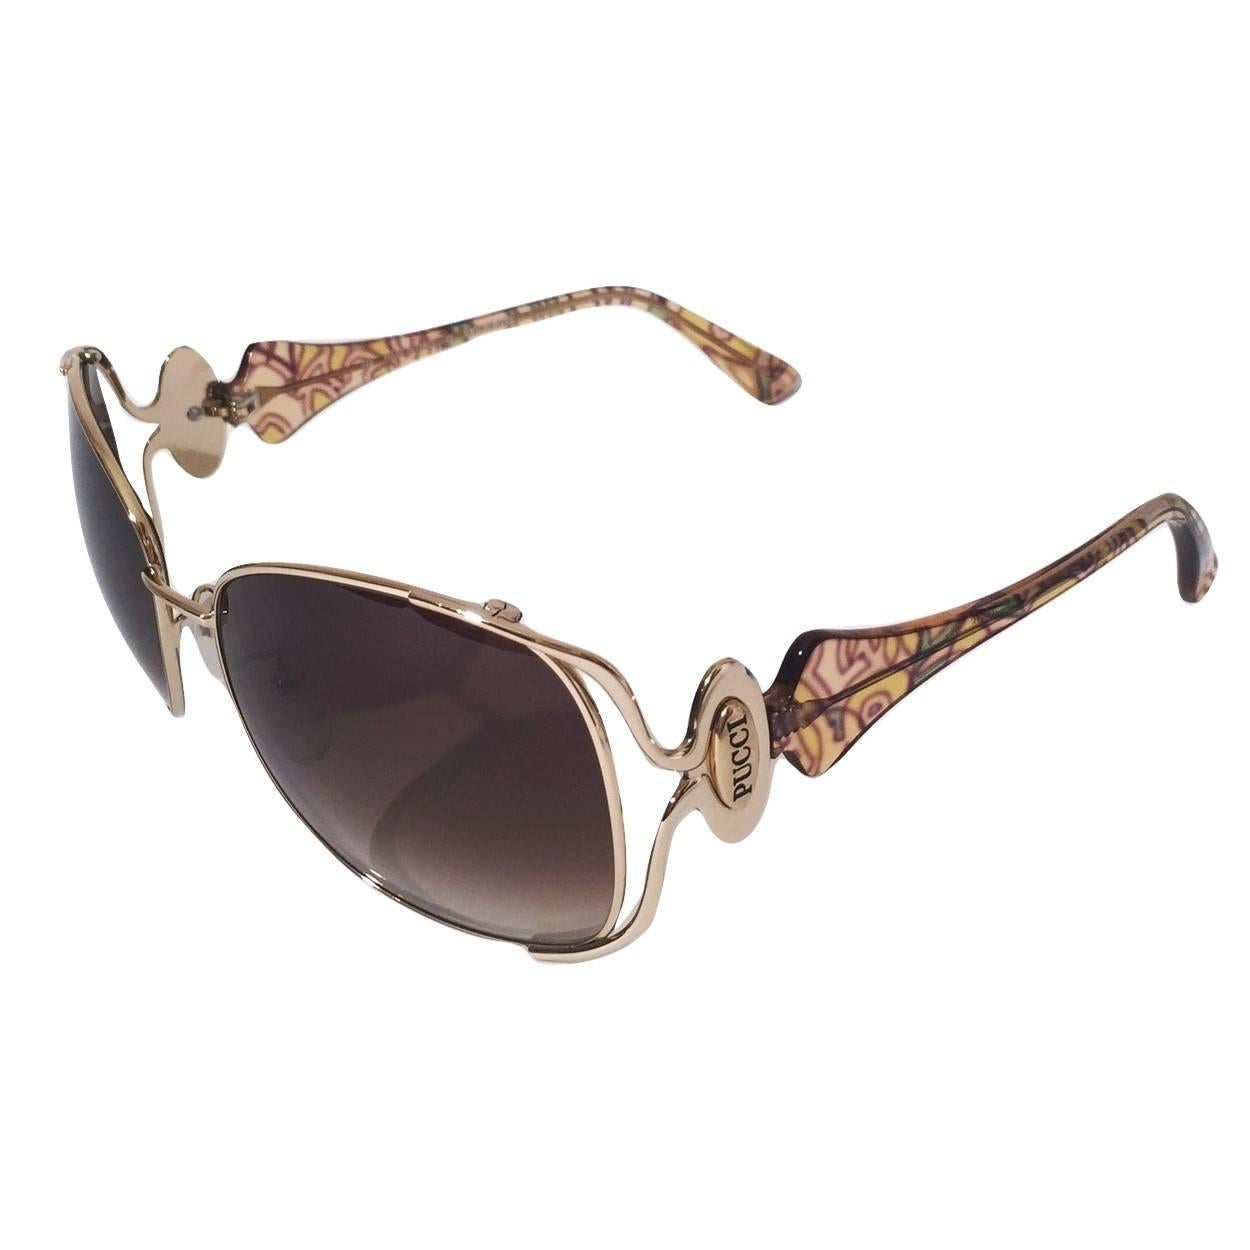 Gray New Emilio Pucci Gold Aviator Sunglasses  With Case & Box